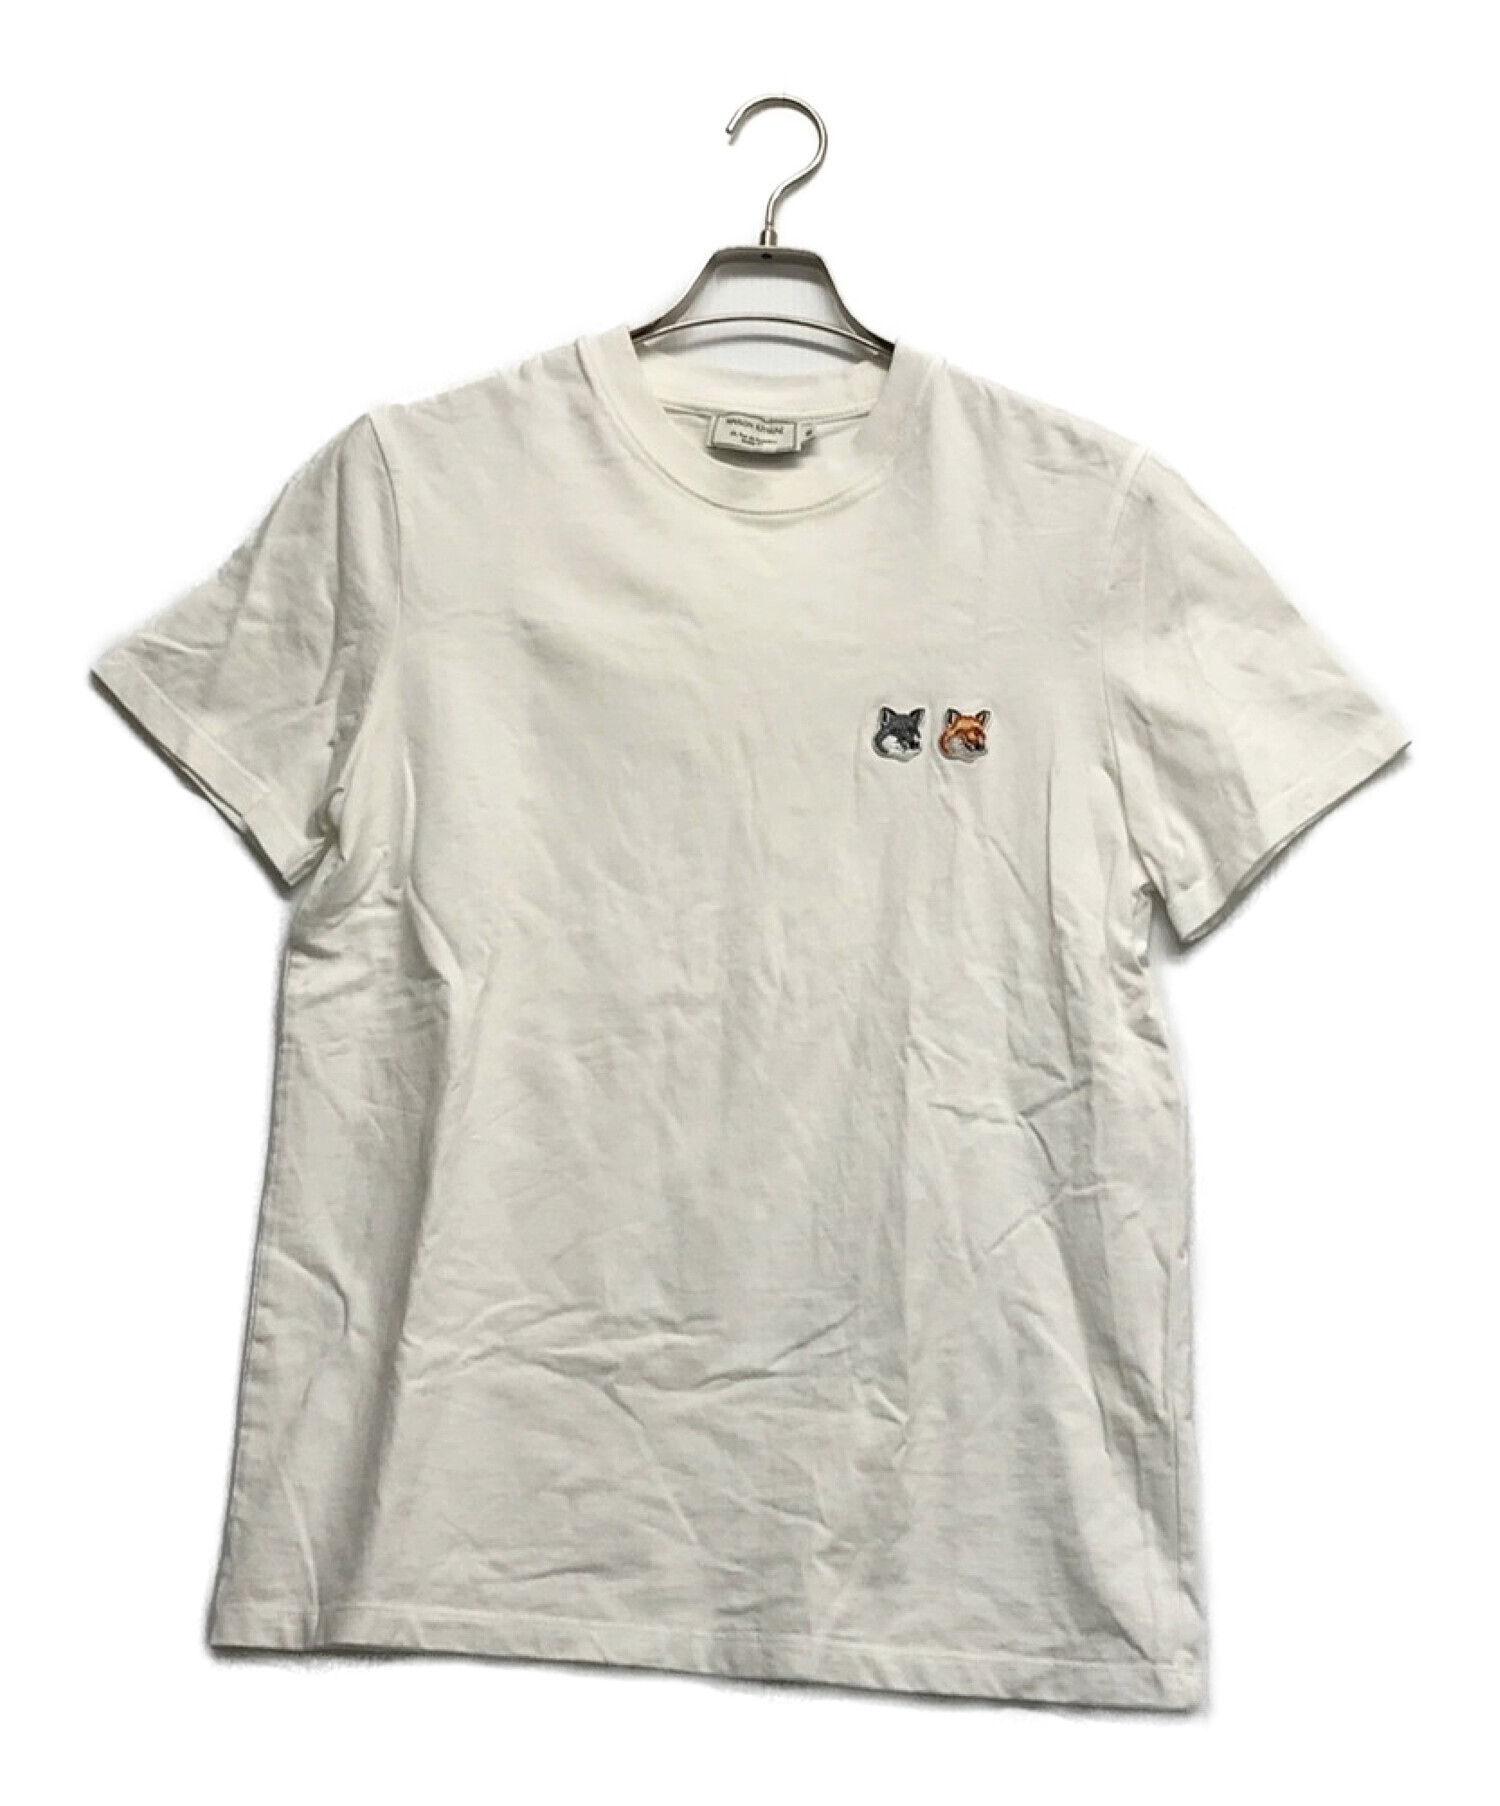 MAISON KITSUNE (メゾンキツネ) ダブルフォックスヘッド Tシャツ ホワイト サイズ:M